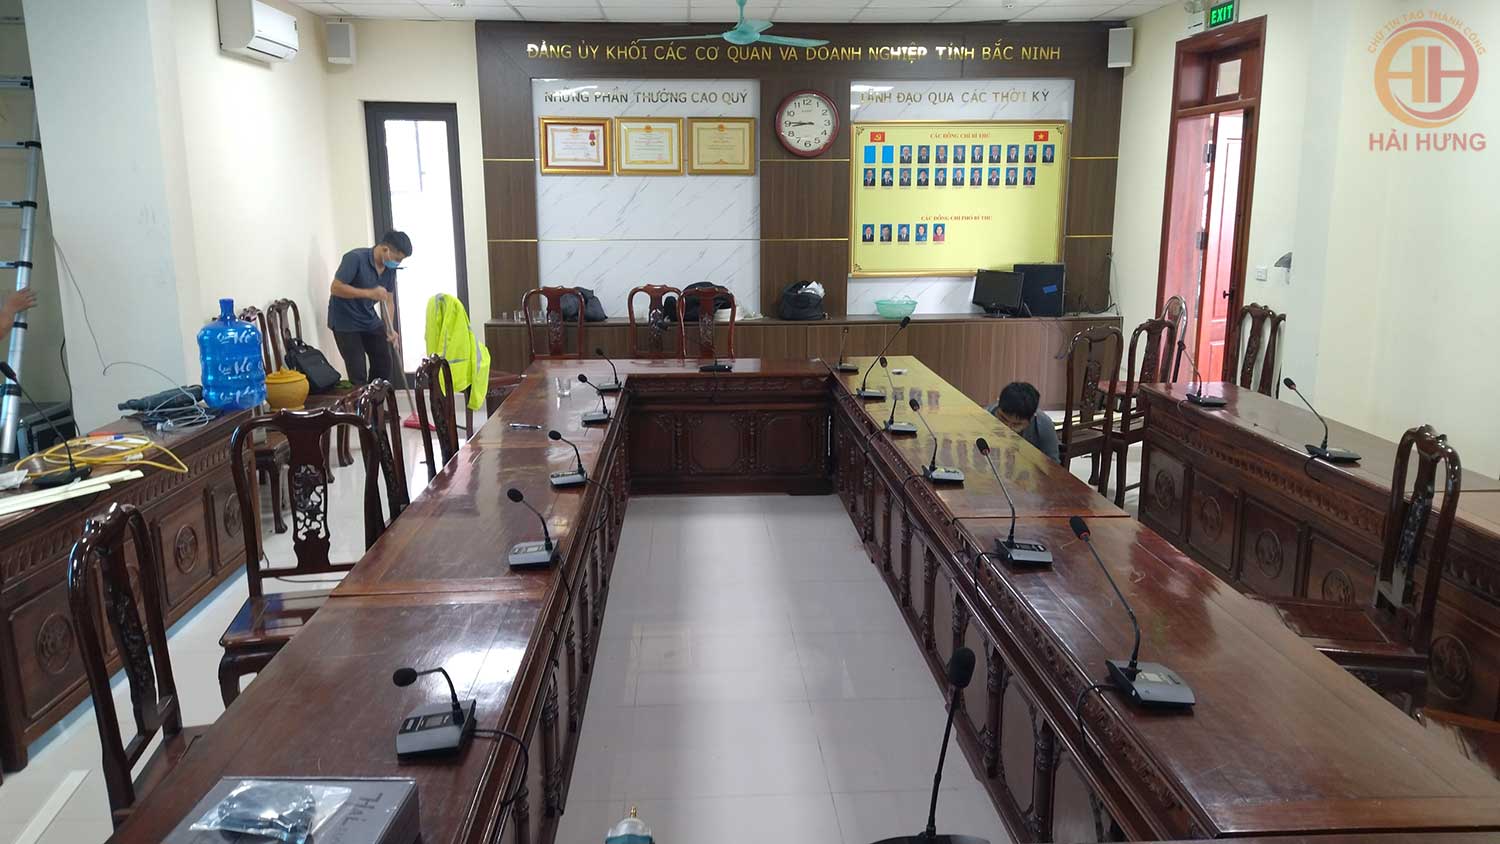 Lắp đặt hệ thống hội thảo Hai Audio cho Đảng ủy khối các cơ quan và doanh nghiệp tỉnh Bắc Ninh